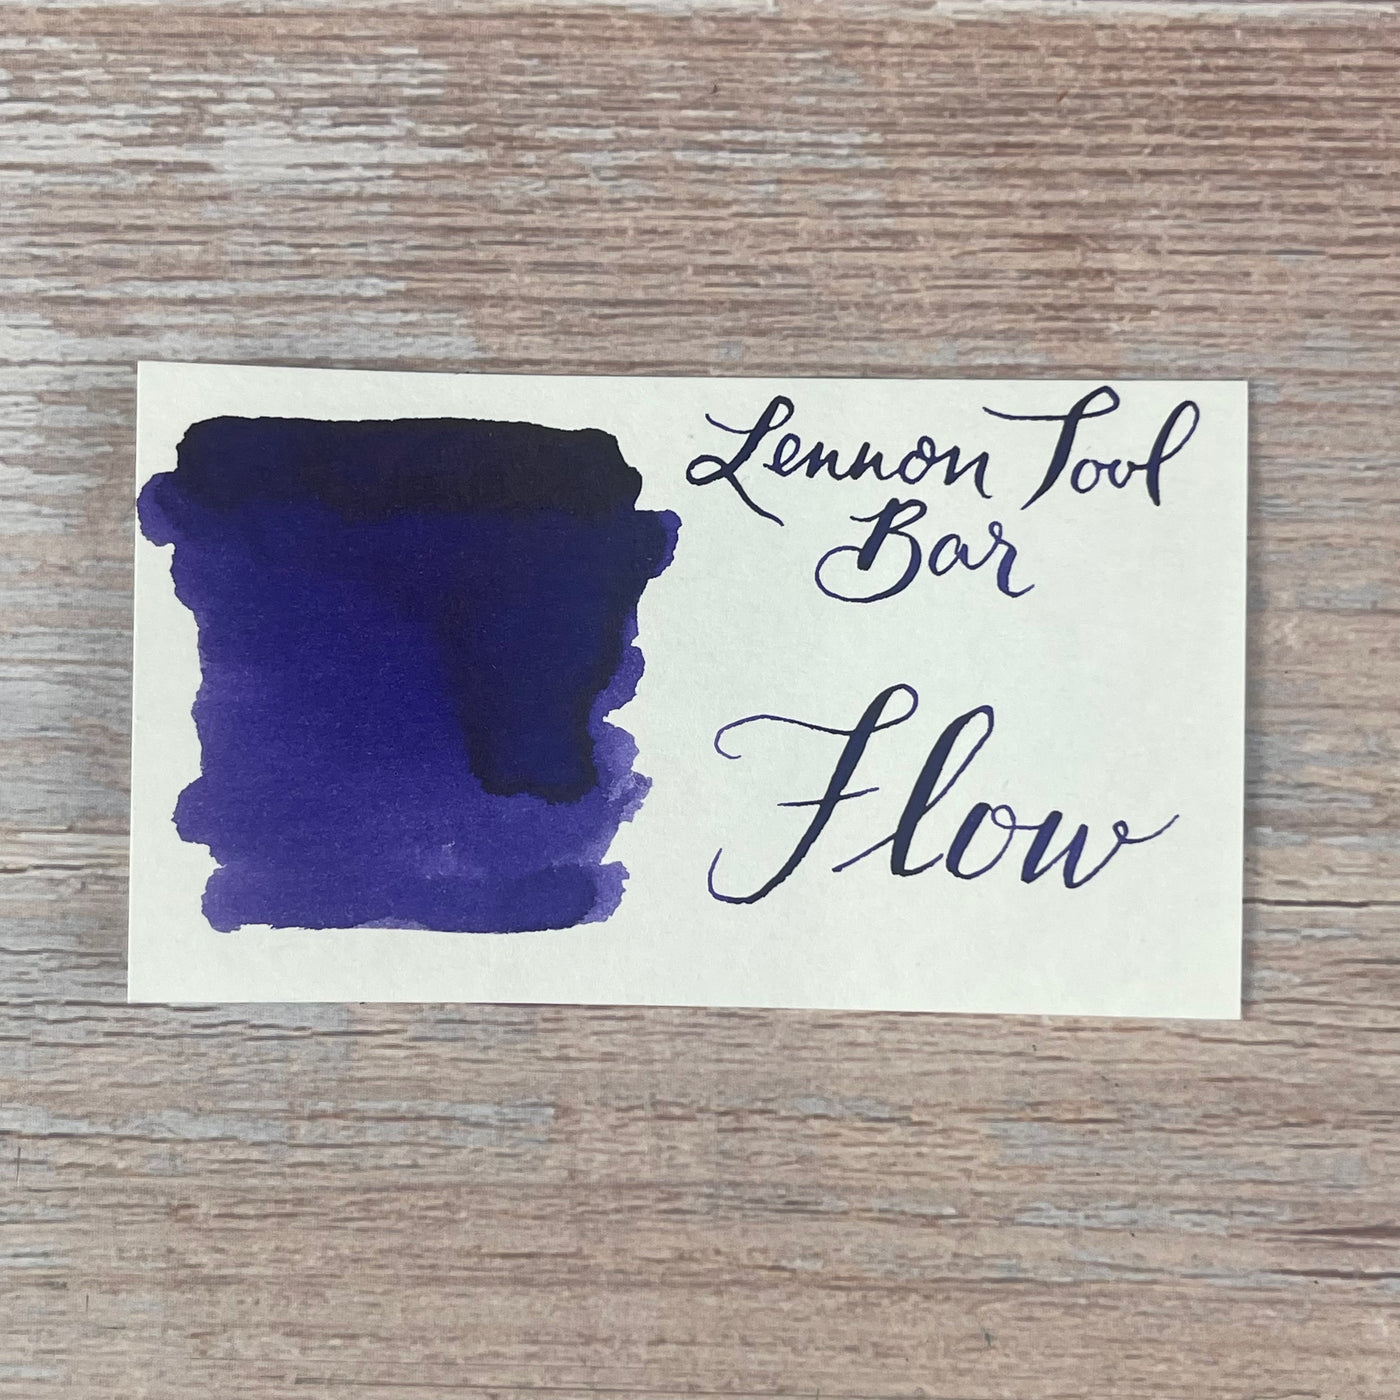 Lennon Tool Bar Flow - 30ml Bottled Ink